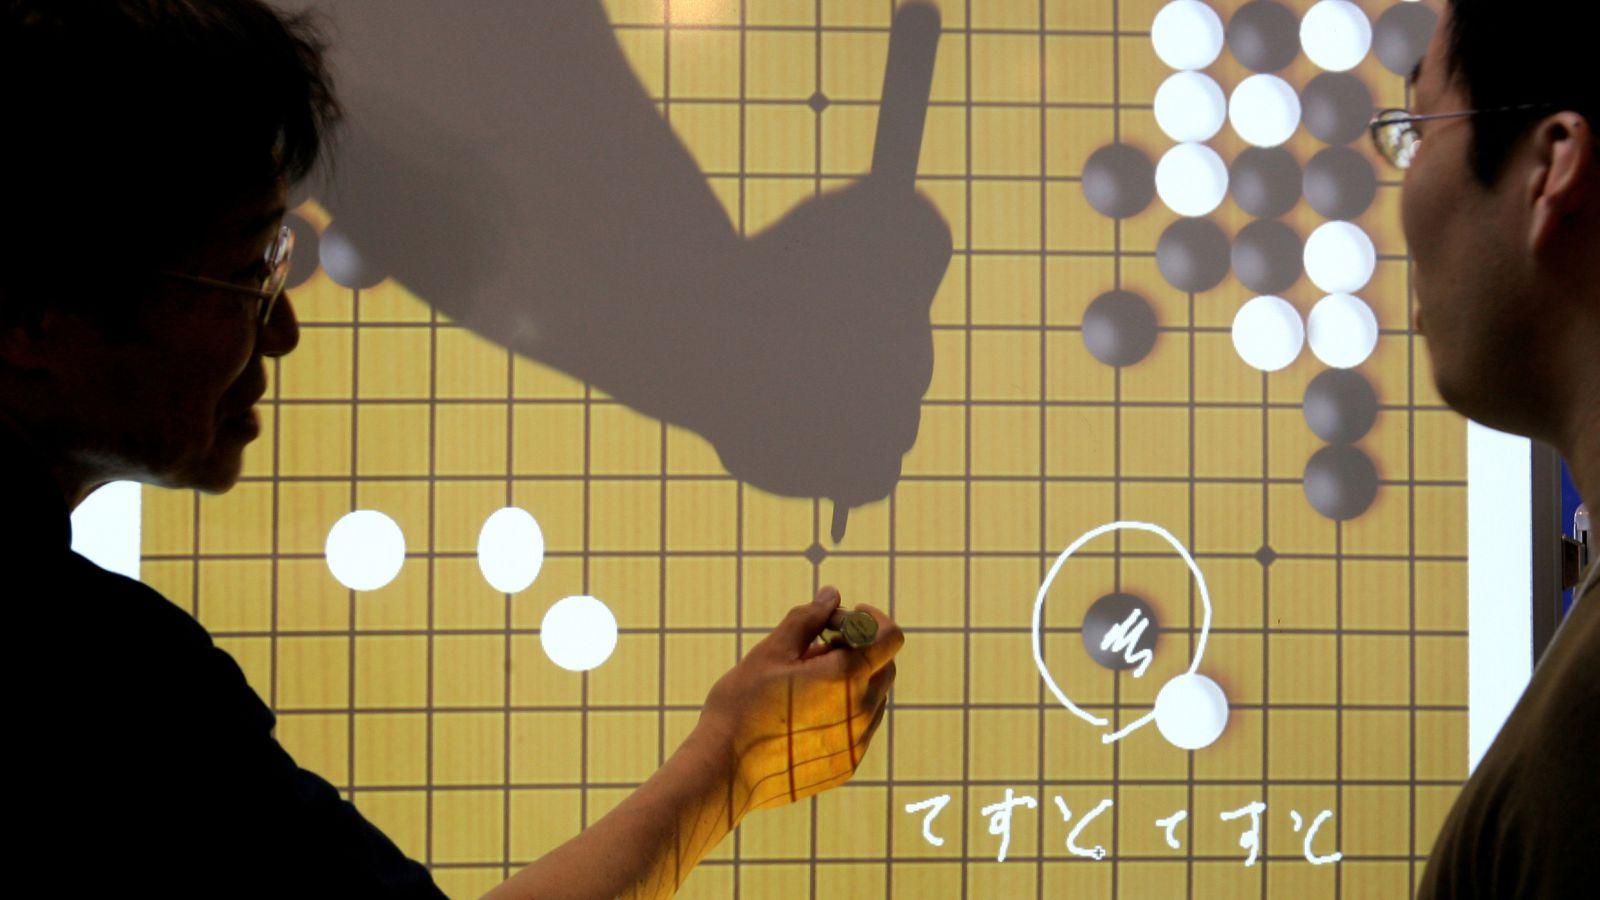 IA do Google aprende sozinha a jogar xadrez e vence campeão